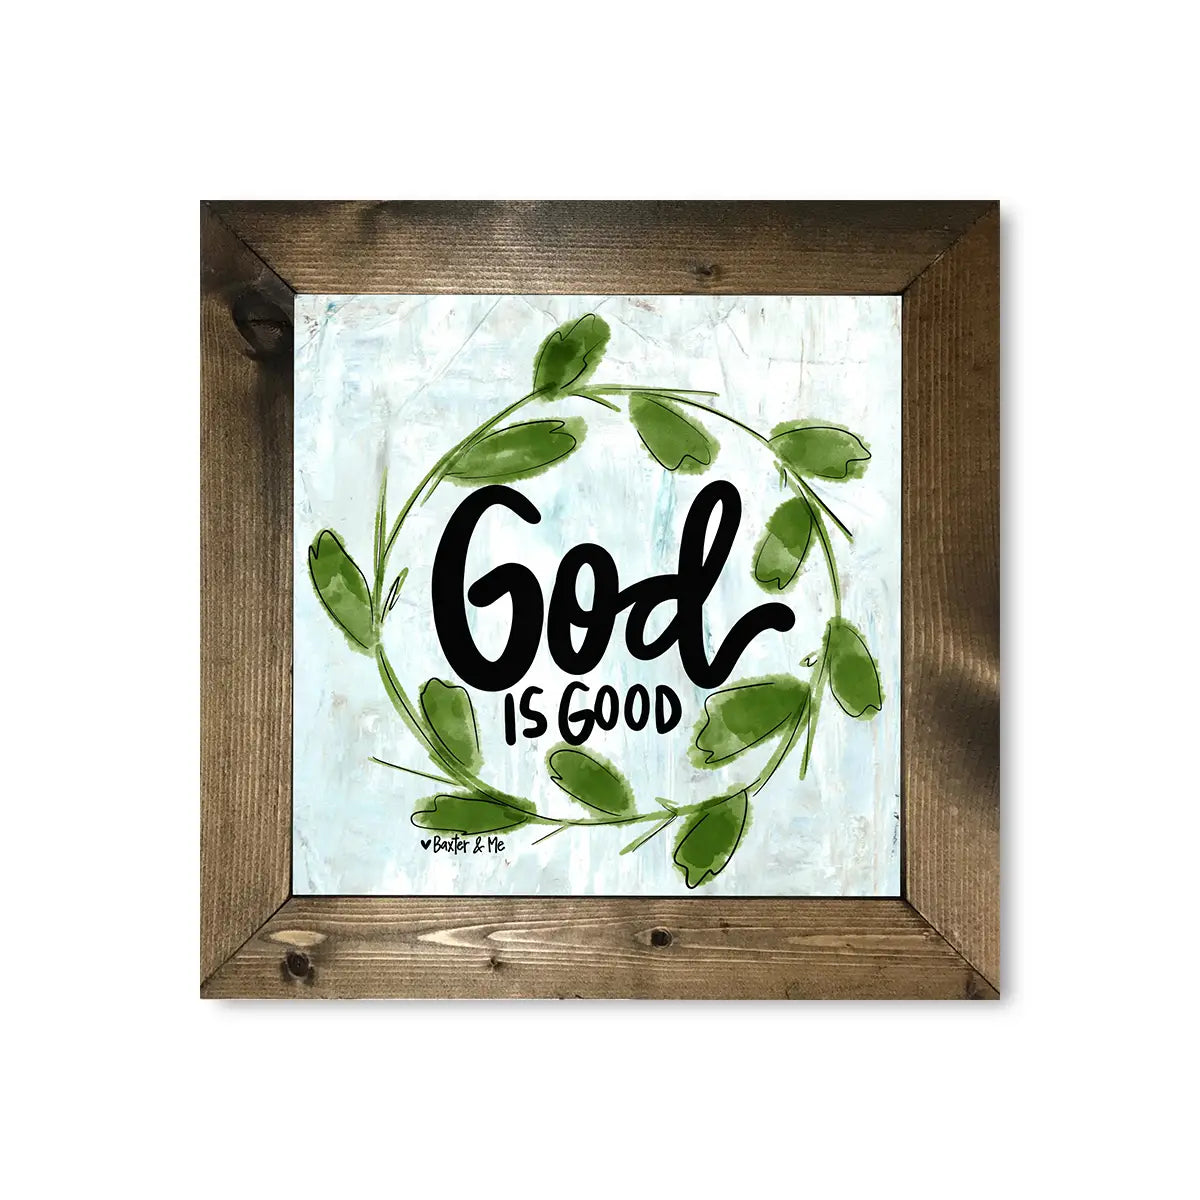 God Is Good - Framed Art